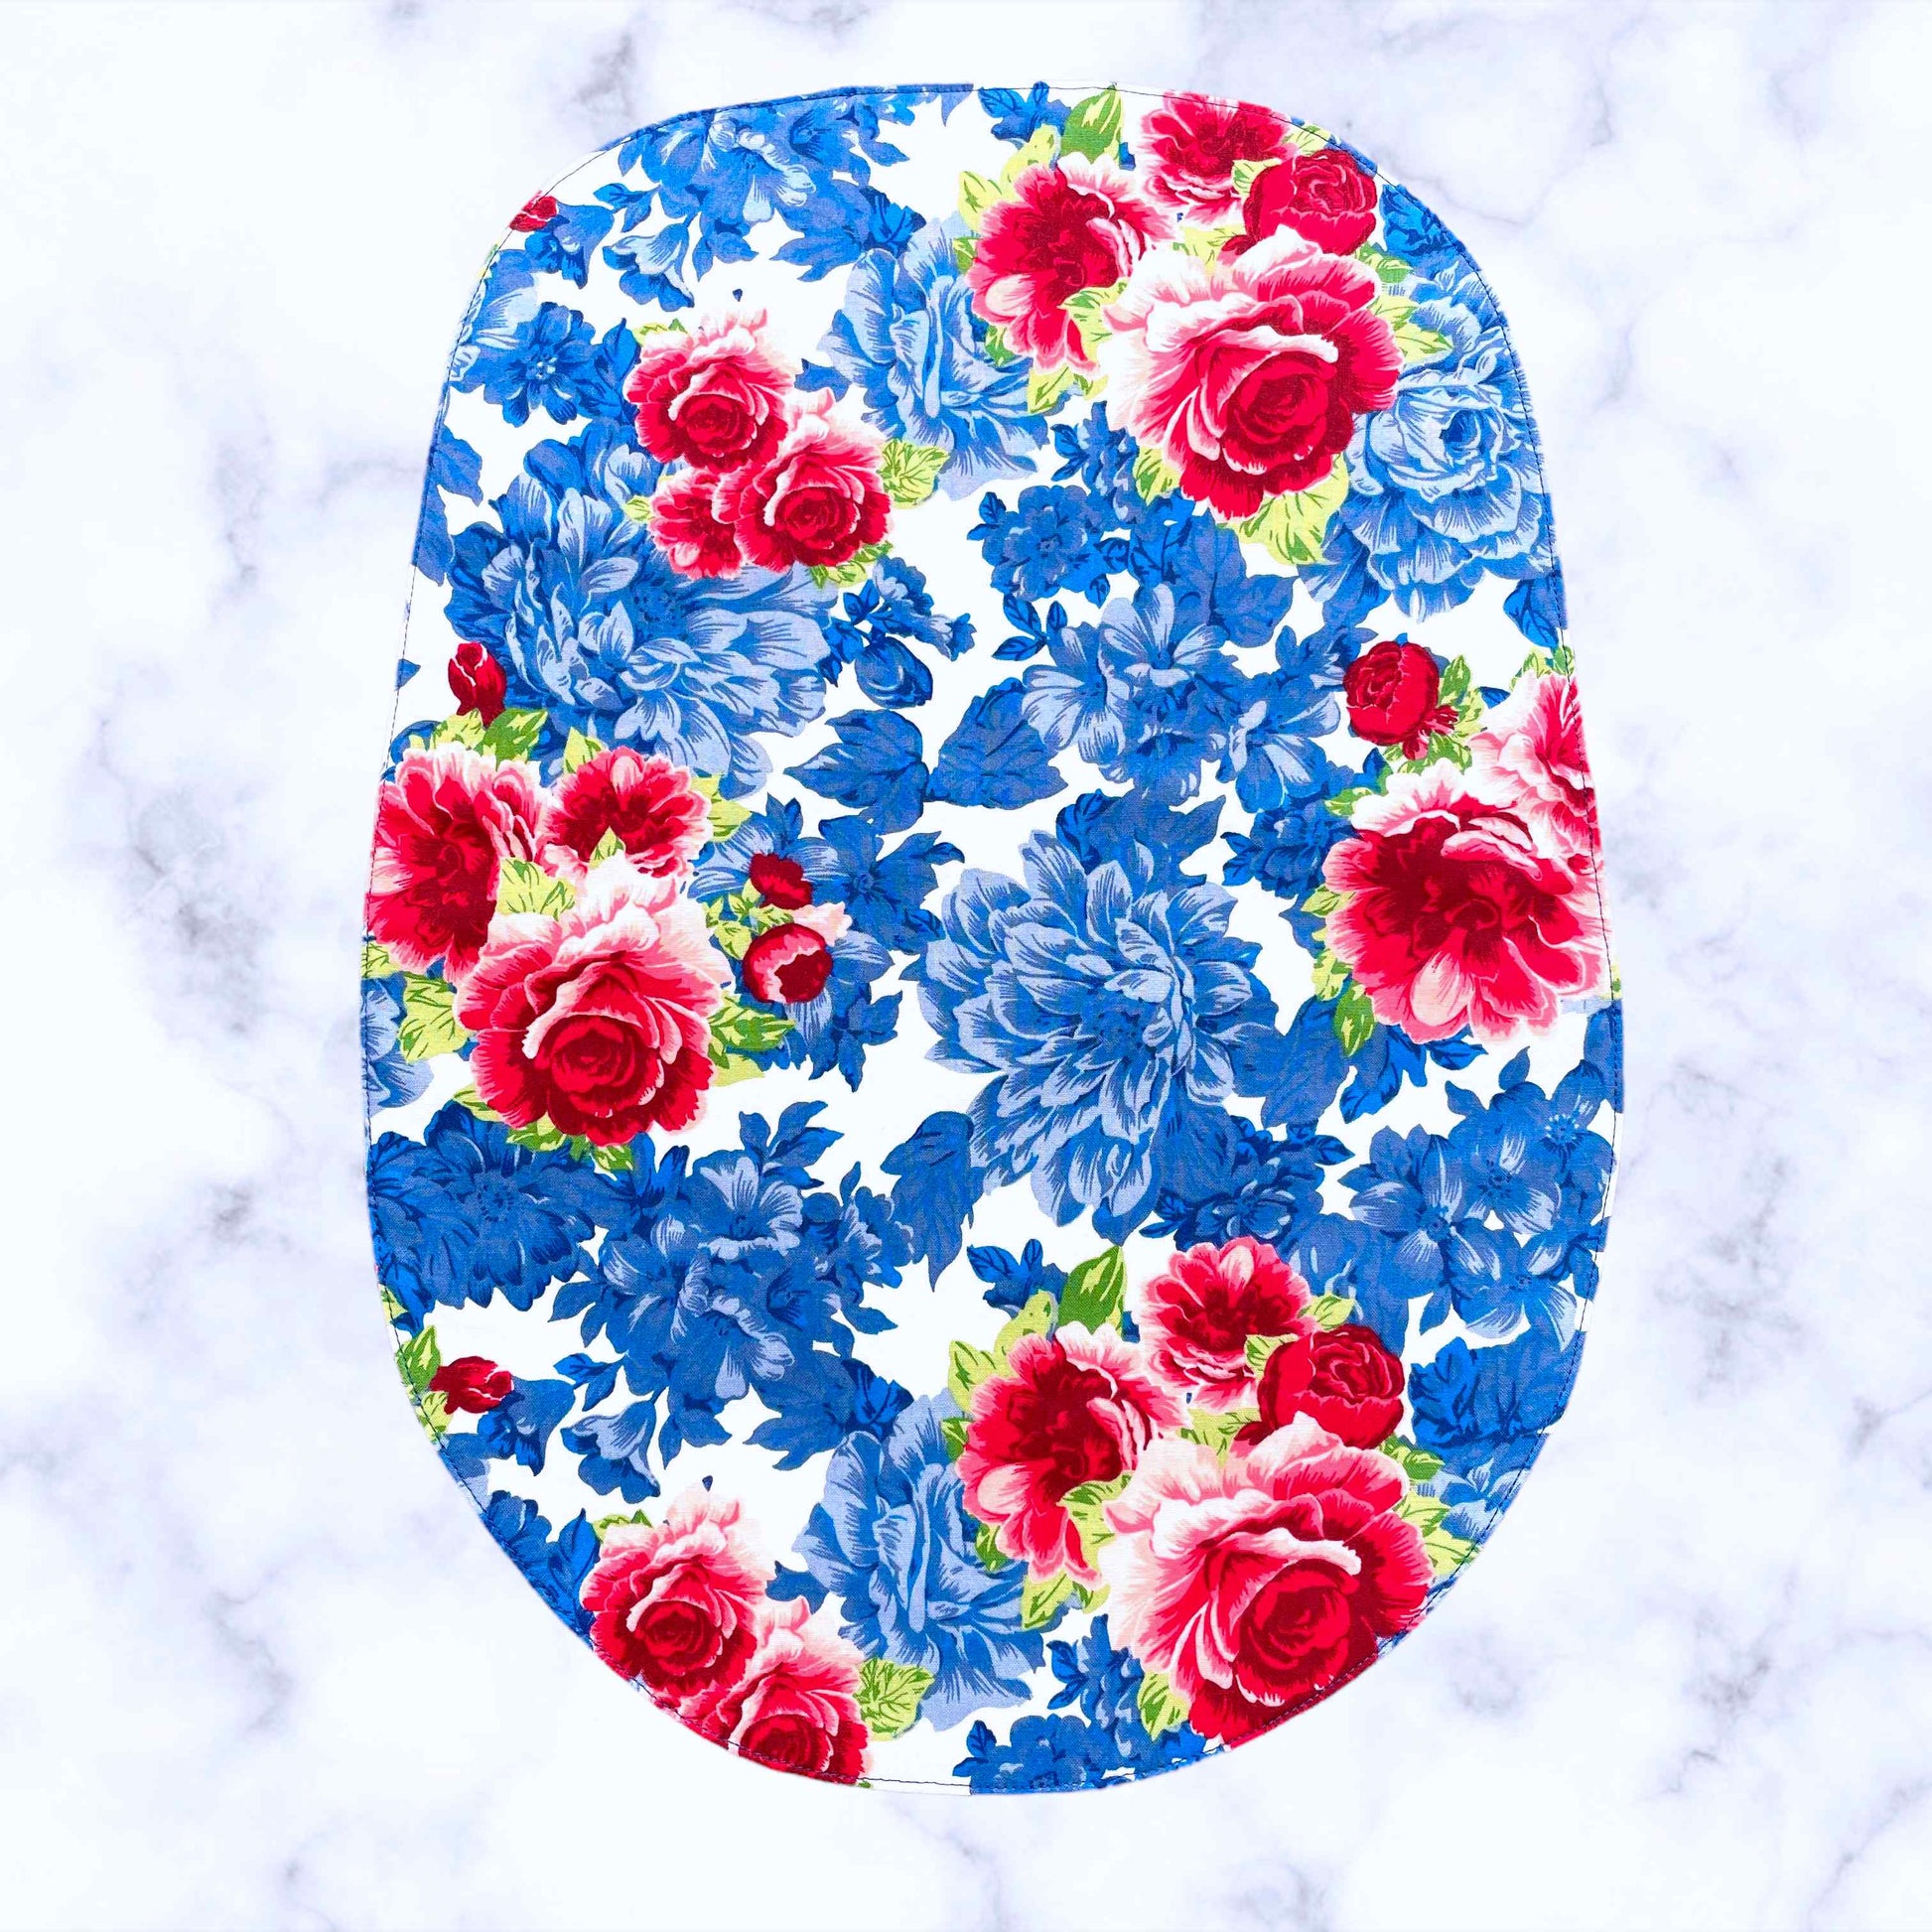 Blue Floral Bowl Cover Set